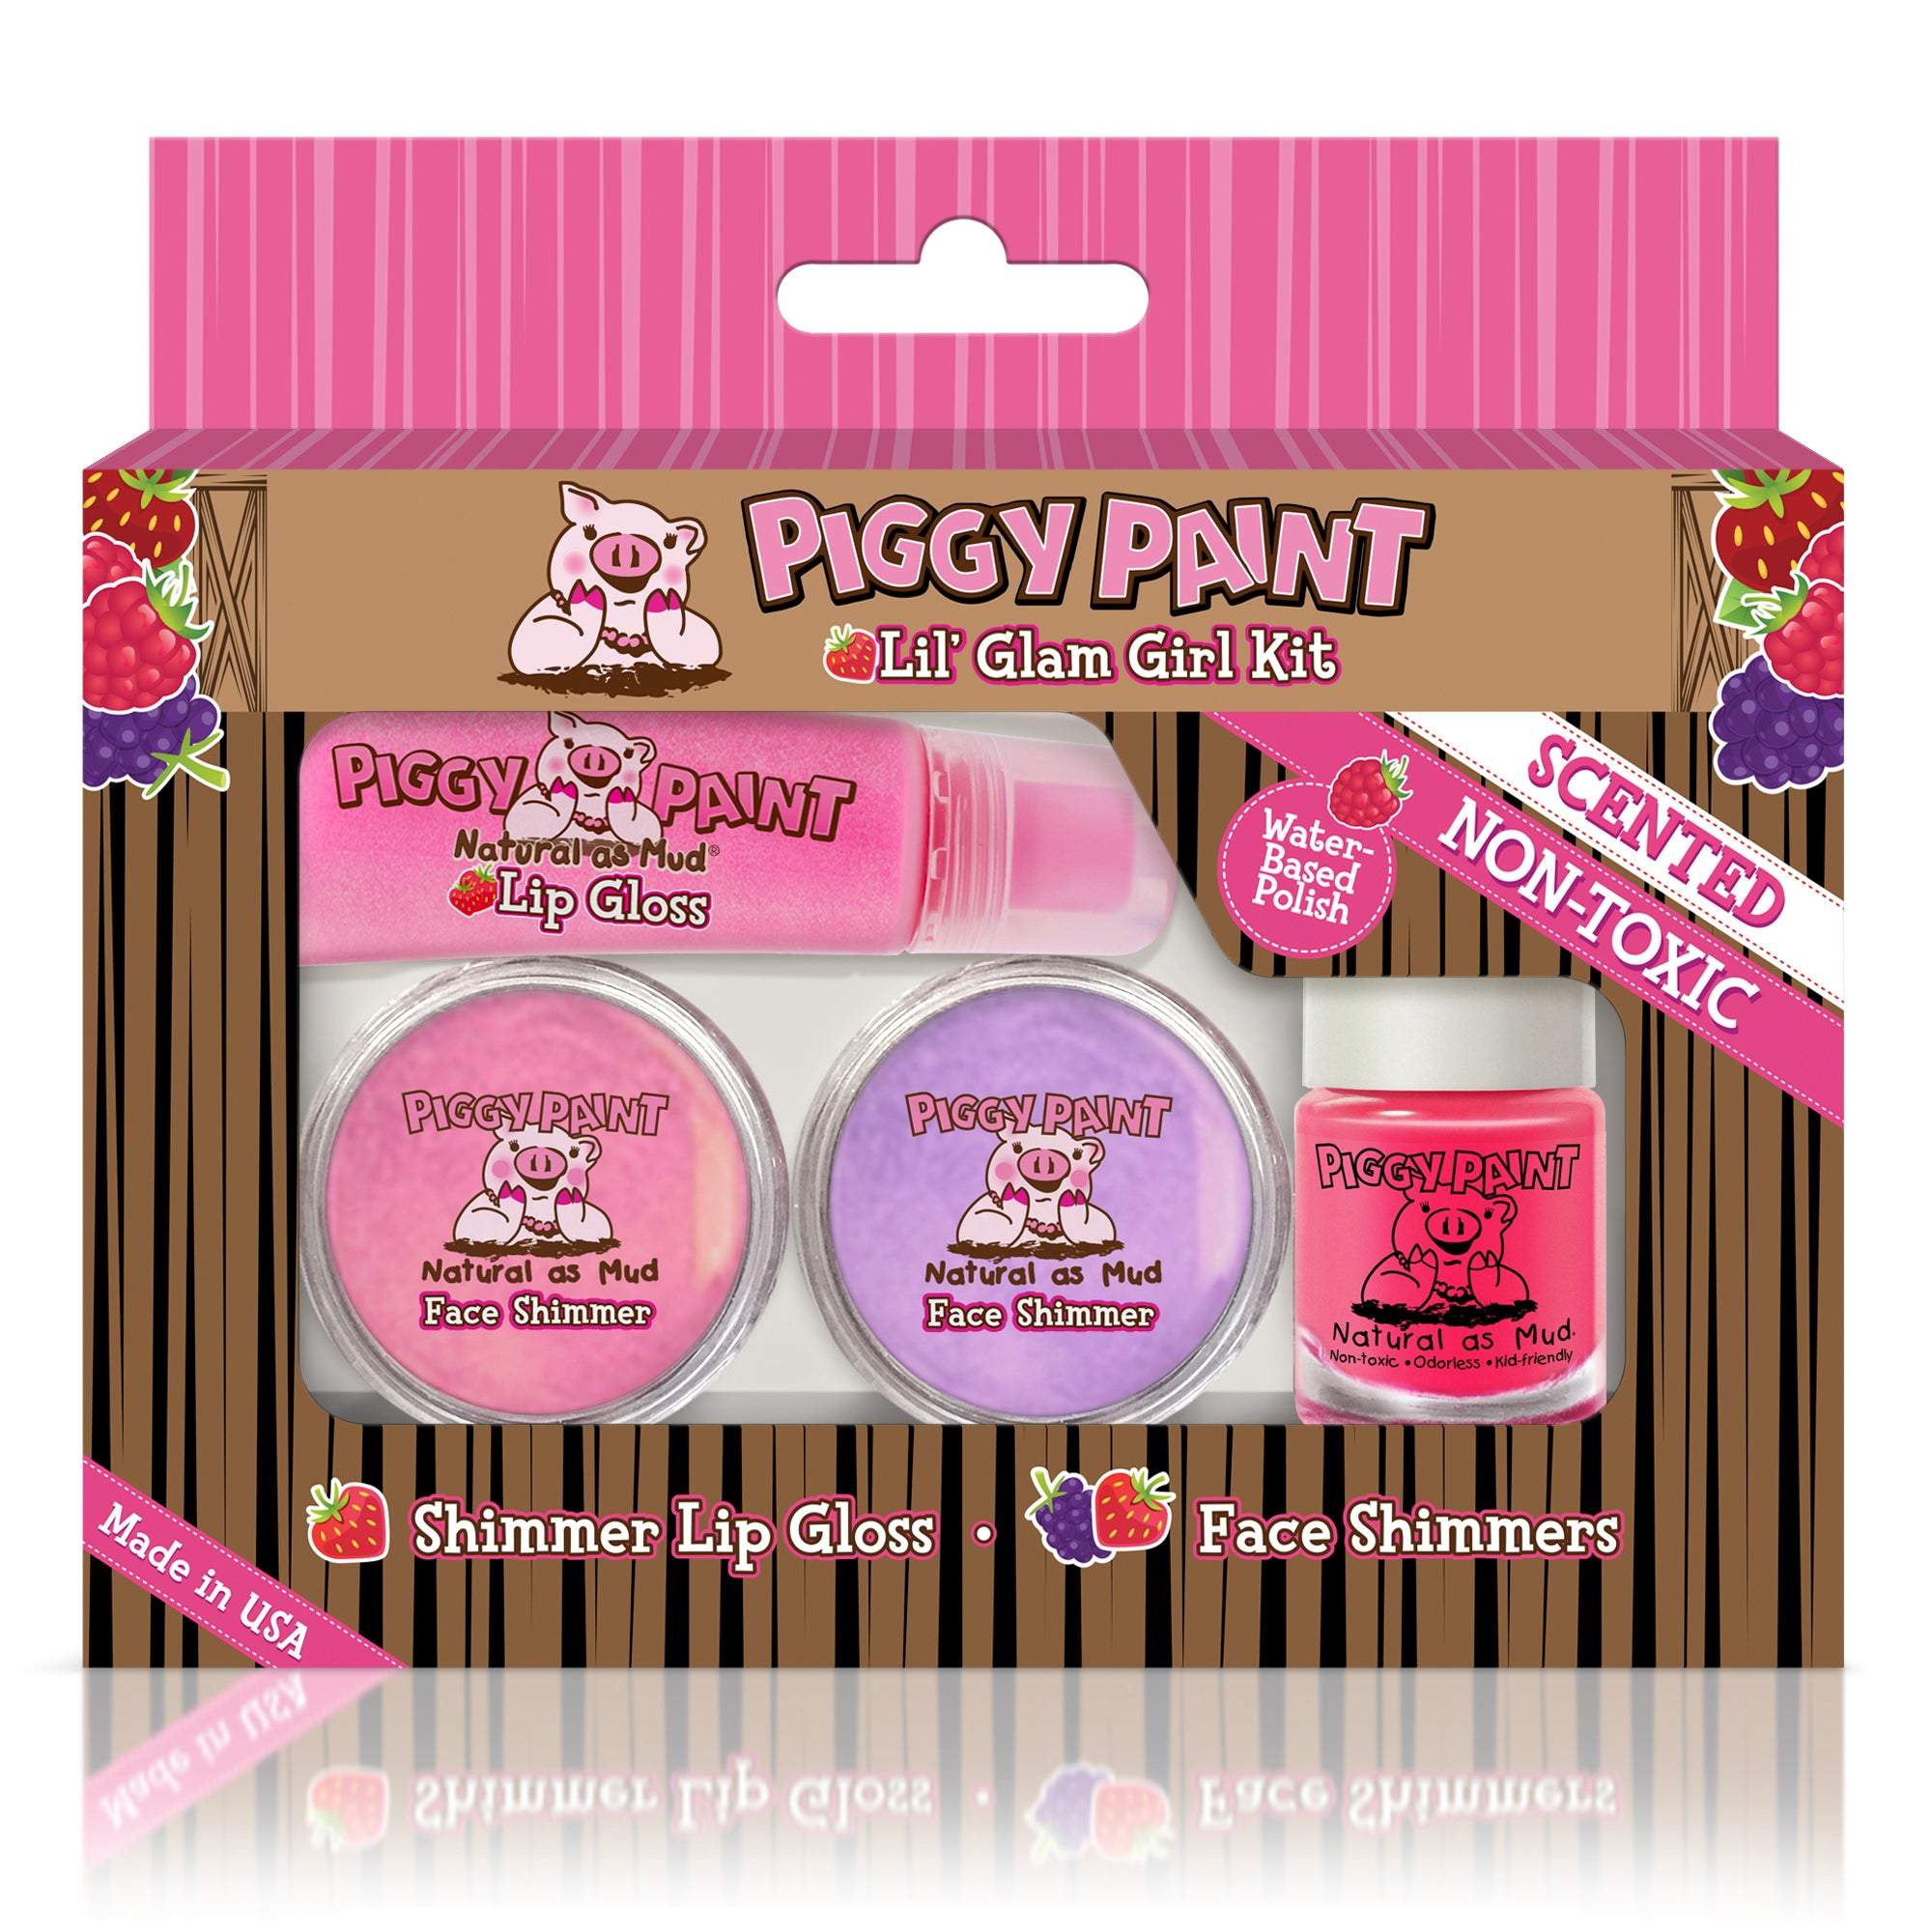 Piggy Paint Lil' Glam Girl Kit-Piggy Paint-Brand_Piggy Paint,Collection_Gifts,Collection_Nails,Gifts and Sets,Nail_Polish,Piggy Paint_Gift Set's,Piggy Paint_Polish's,Piggy Paint_Scented Polish's